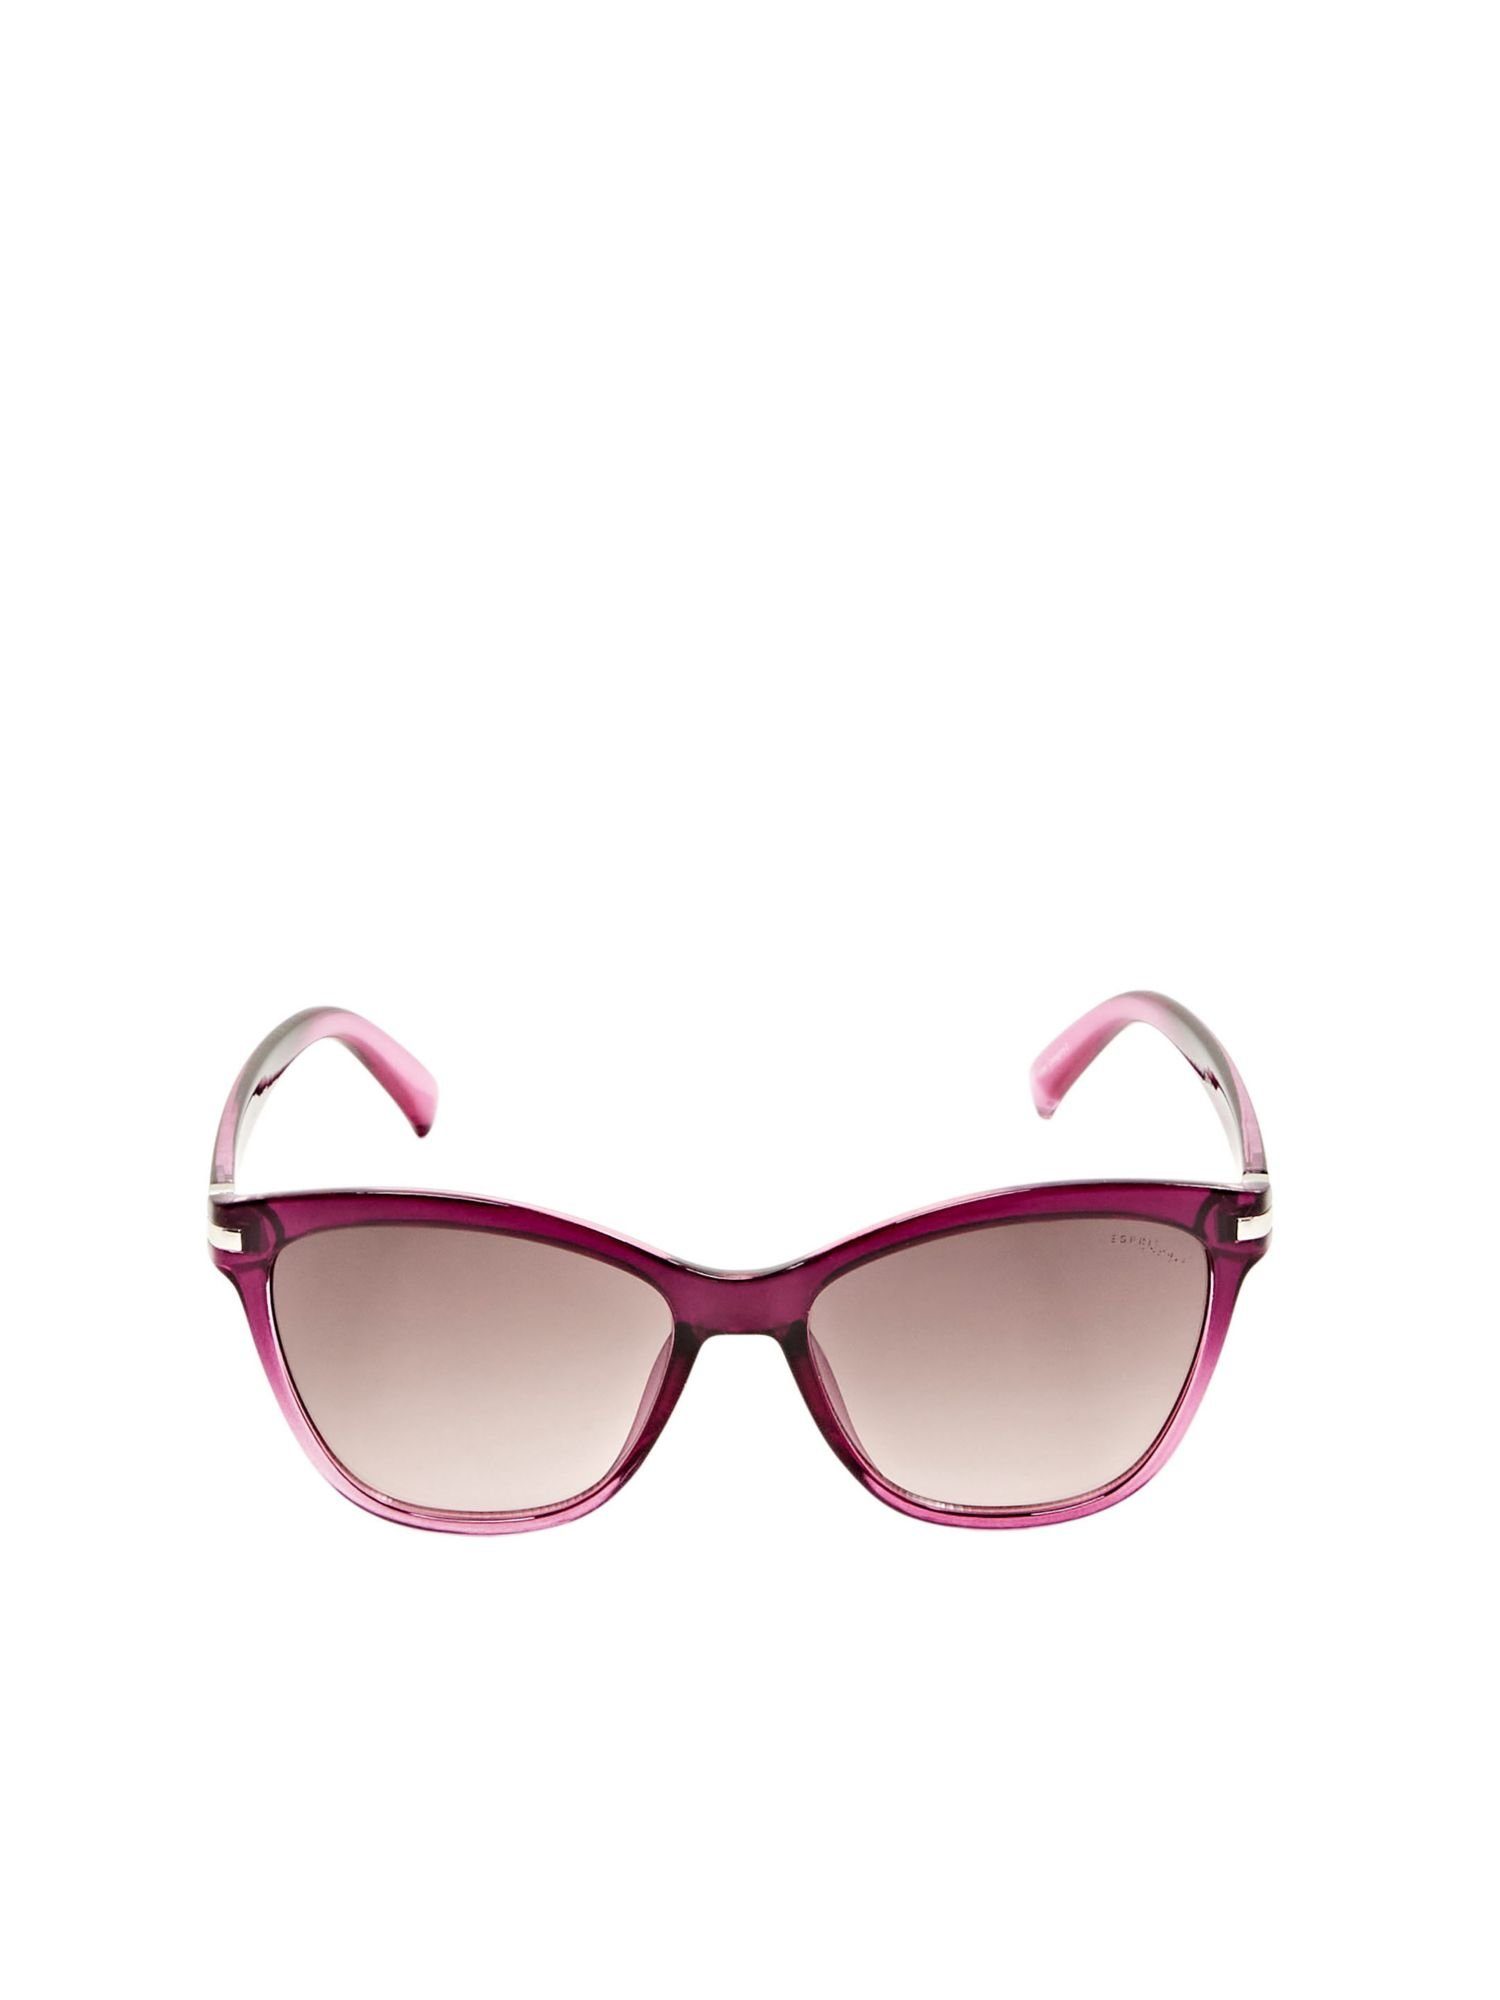 PURPLE Cateye-Sonnenbrille Esprit mit Farbverlauf Sonnenbrille